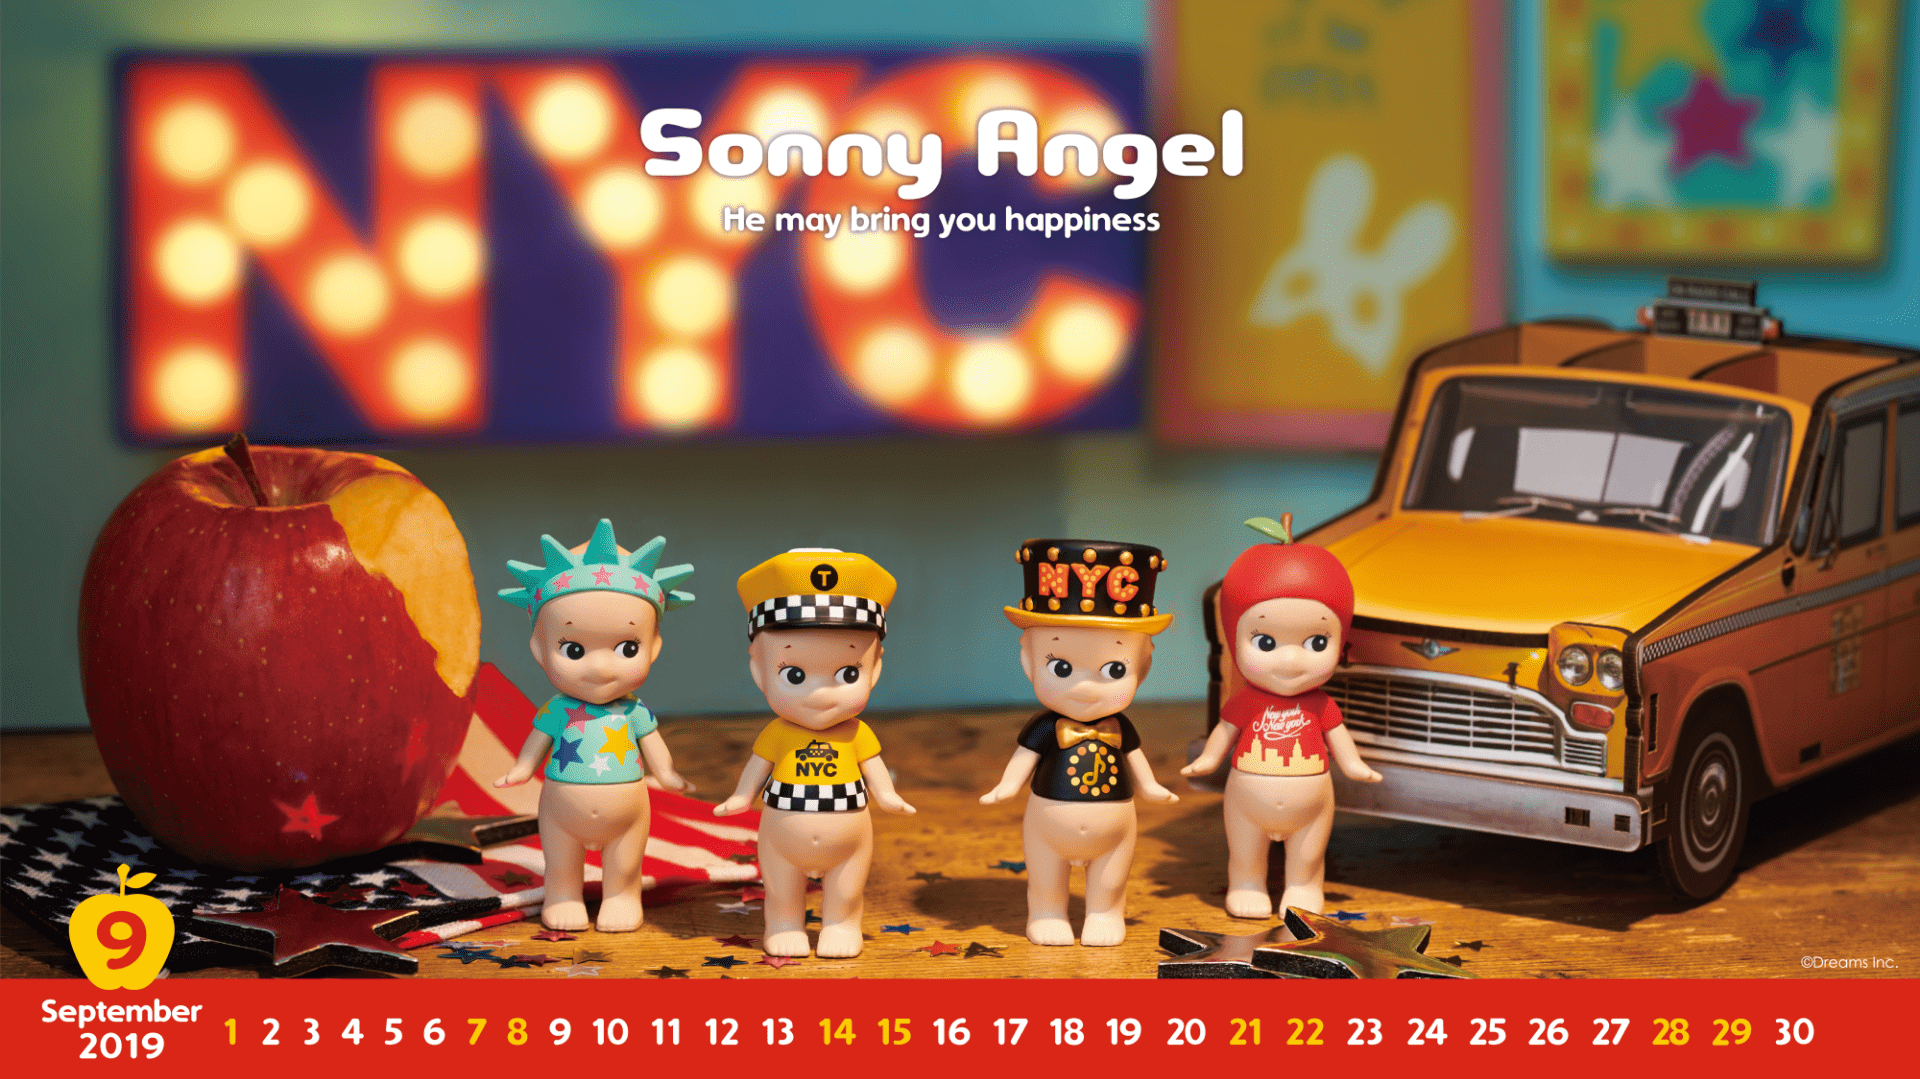 Free download Sonny Angel Original Online Calendar Sonny Angel Store